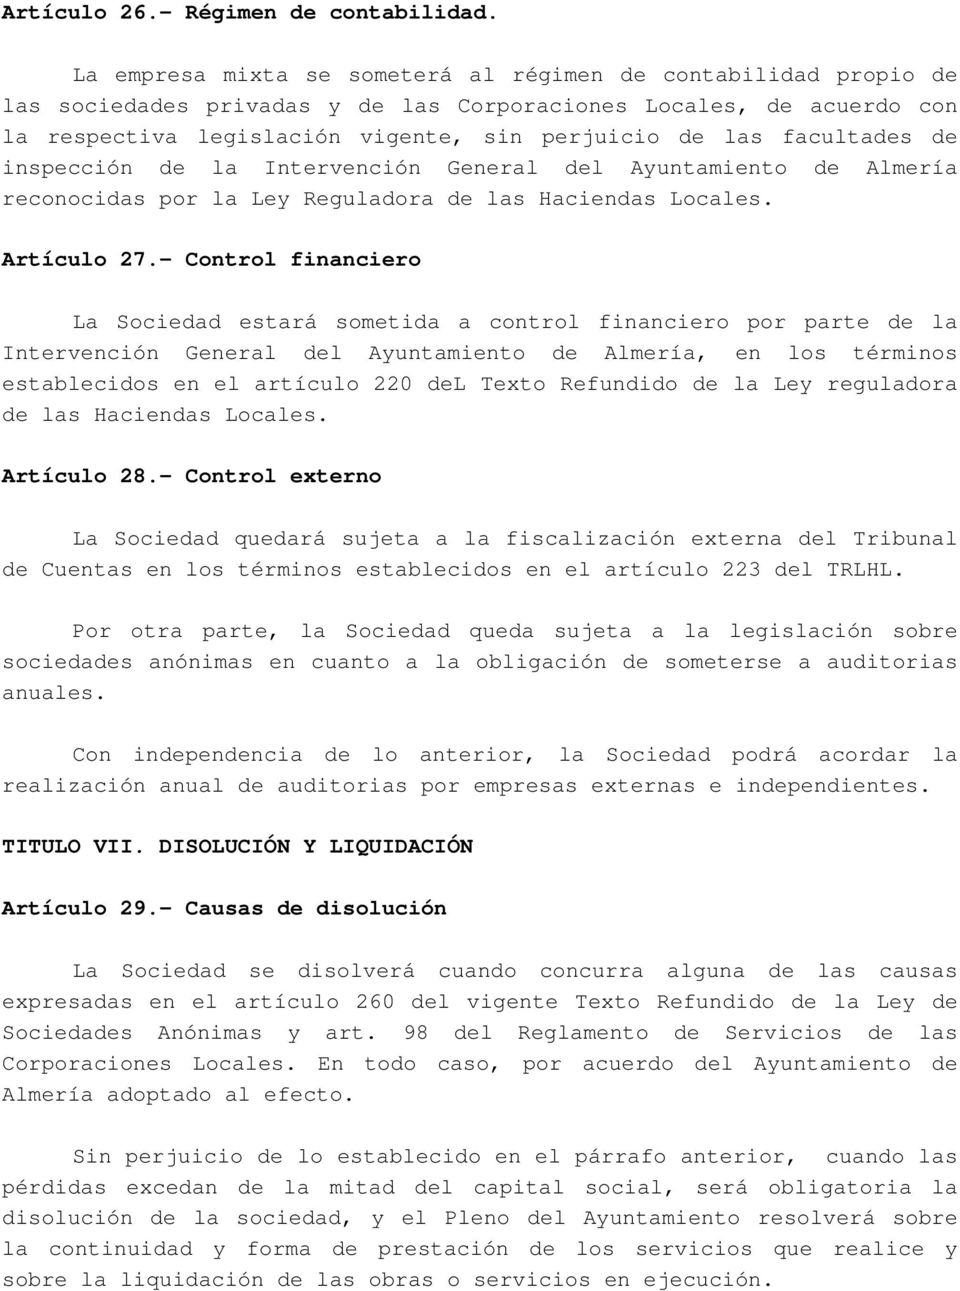 facultades de inspección de la Intervención General del Ayuntamiento de Almería reconocidas por la Ley Reguladora de las Haciendas Locales. Artículo 27.